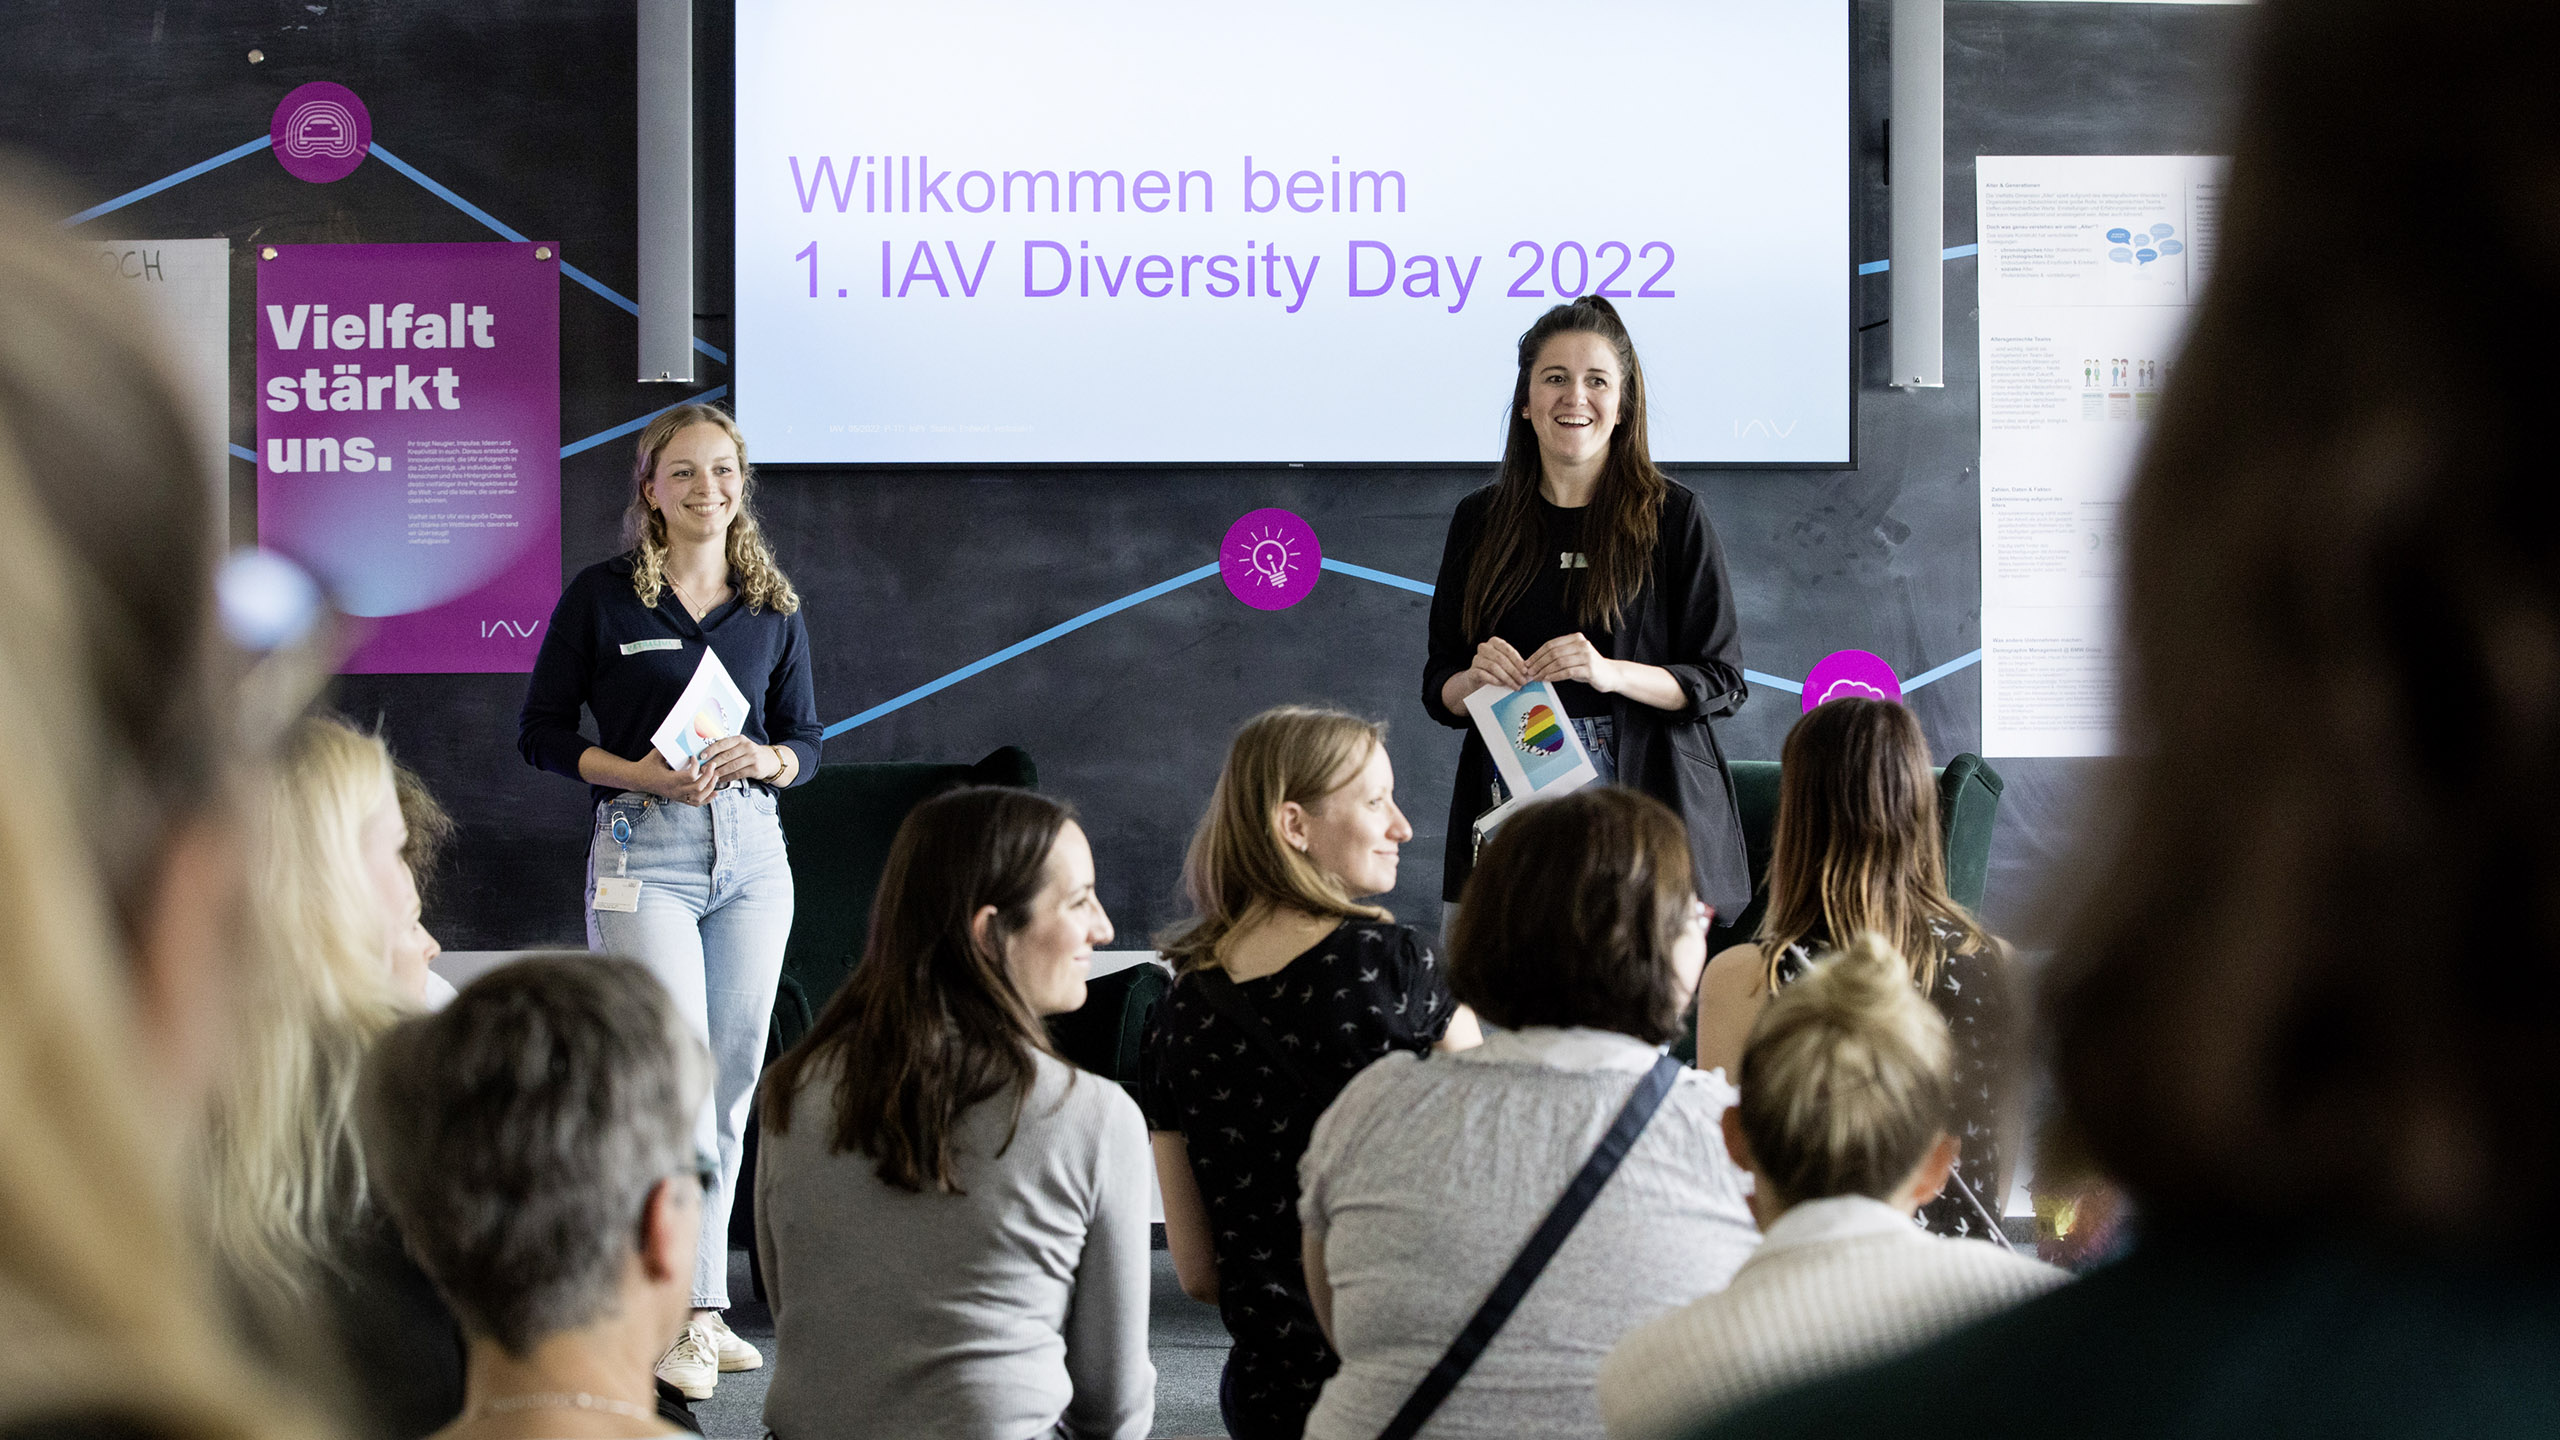 IAV Diversity Day Willkommen21 16 9 2560